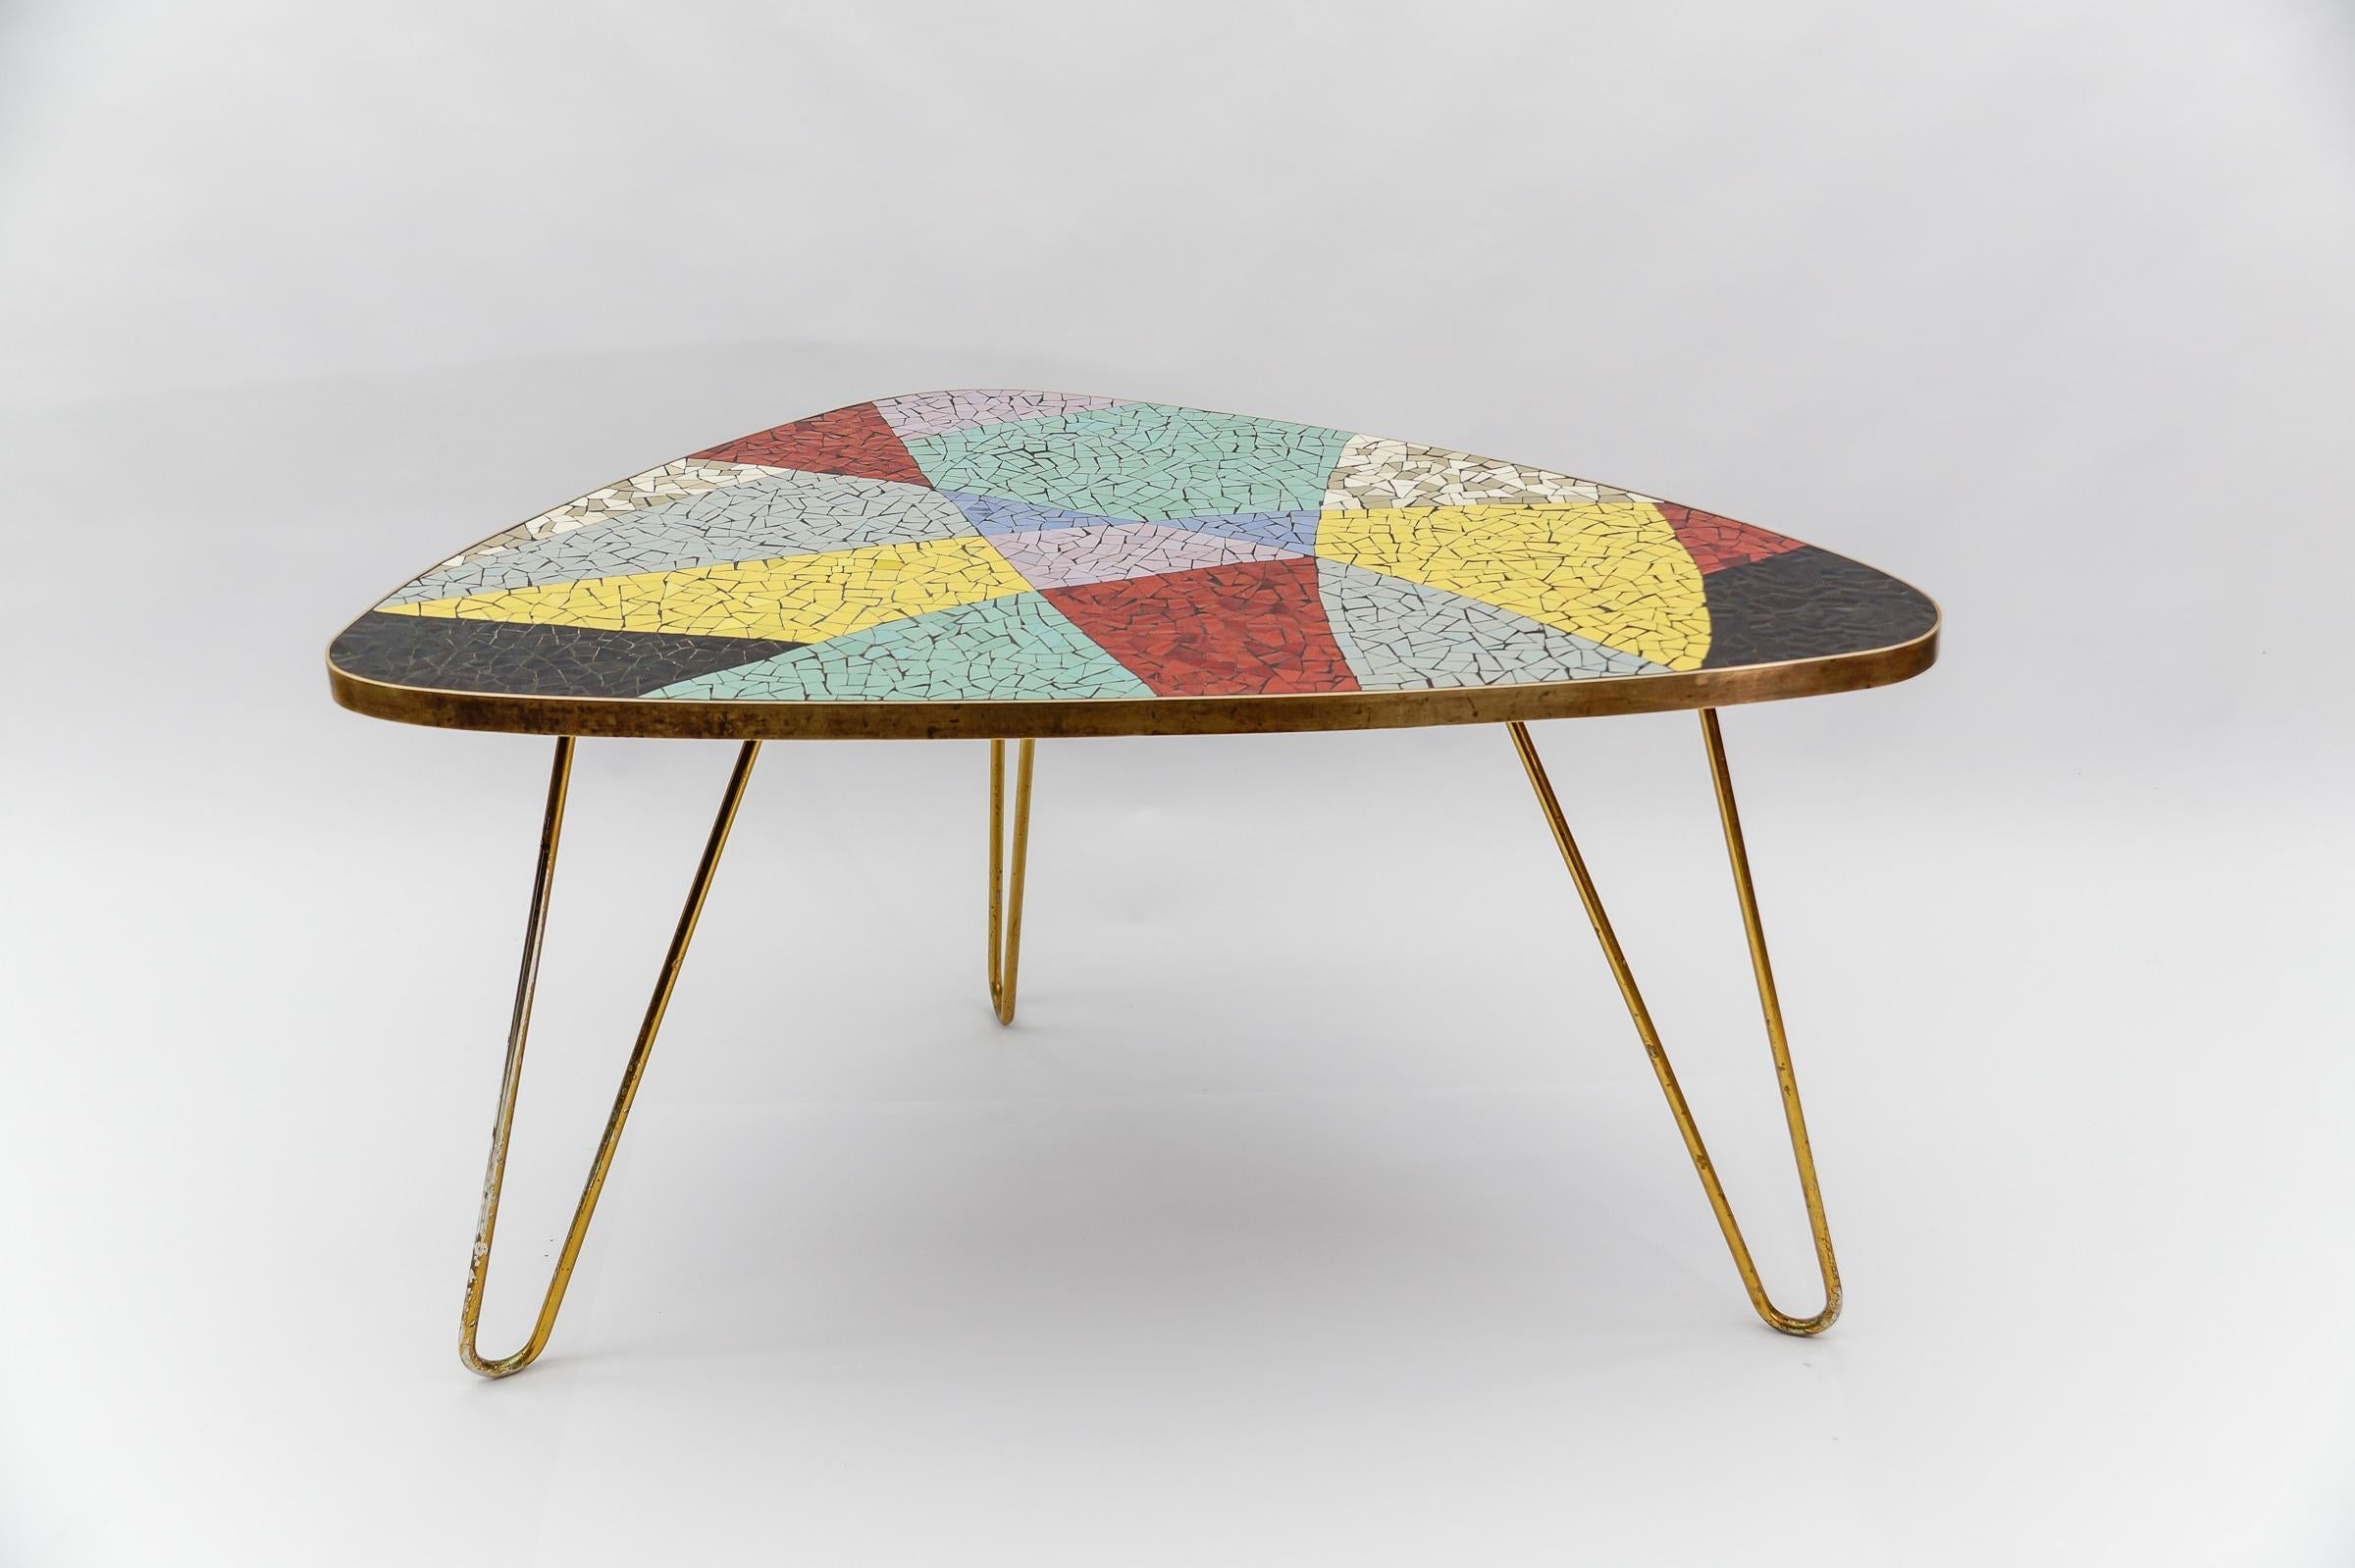 Merveilleuse combinaison de couleurs. Rarement vu une table aussi harmonieuse. Les couleurs sont très riches. 

La table est lourde et robuste. 

Les pieds en métal sont peints en or, bien qu'une partie de la peinture se soit détachée d'un des